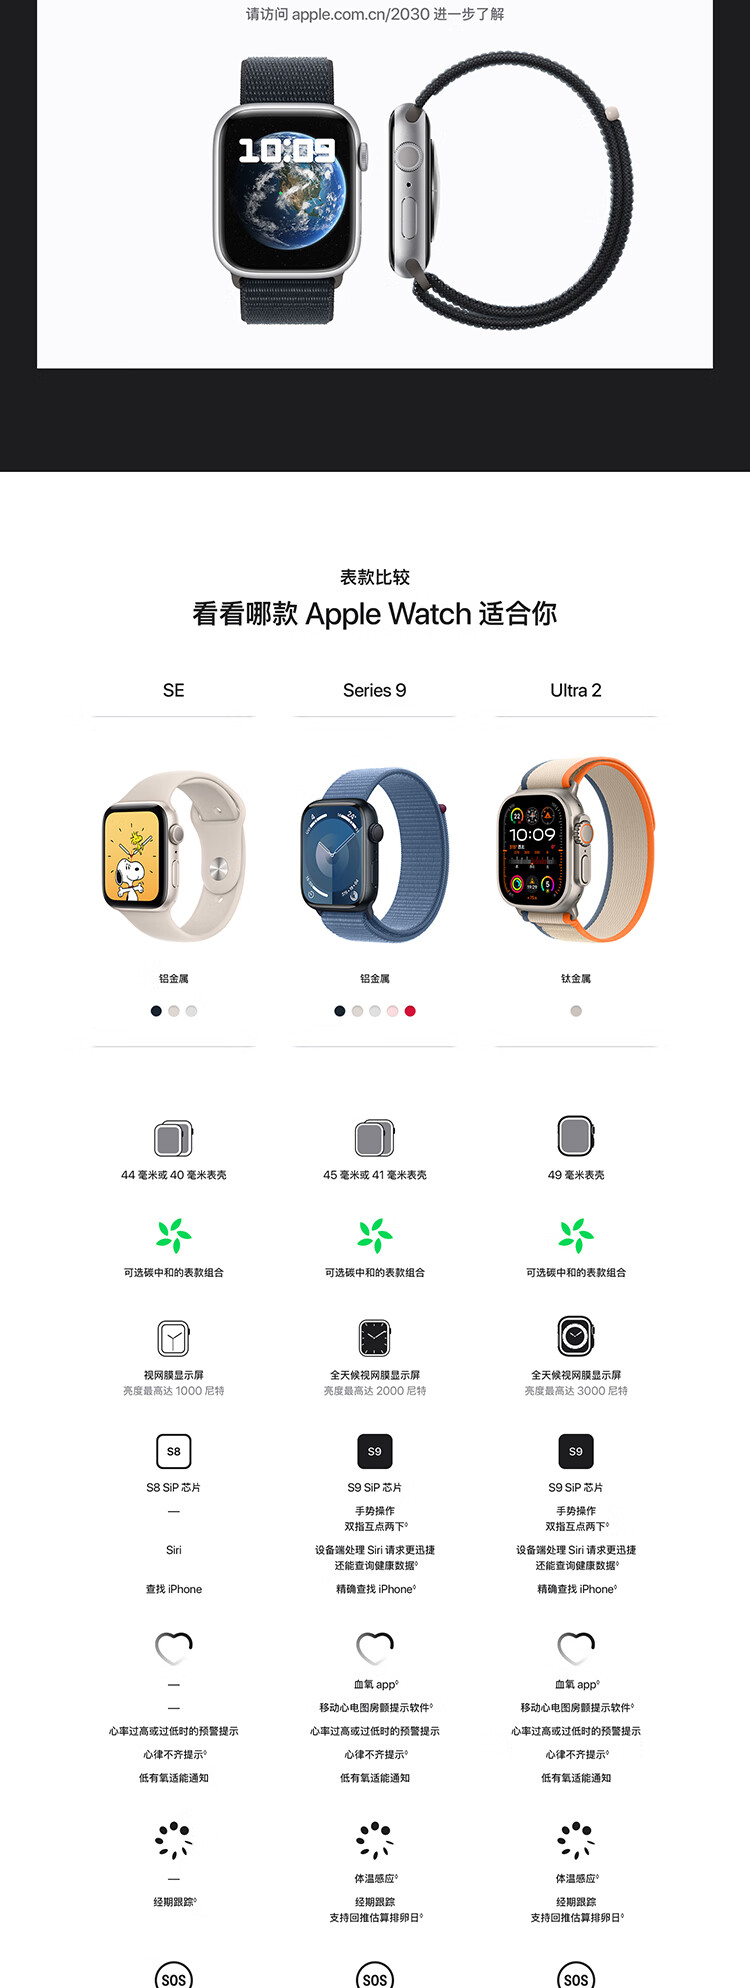 Apple Watch Series 9 智能手表GPS款45毫米午夜色铝金属表壳 午夜色运动型表带S/M 健康手表S9 MR993CH/A